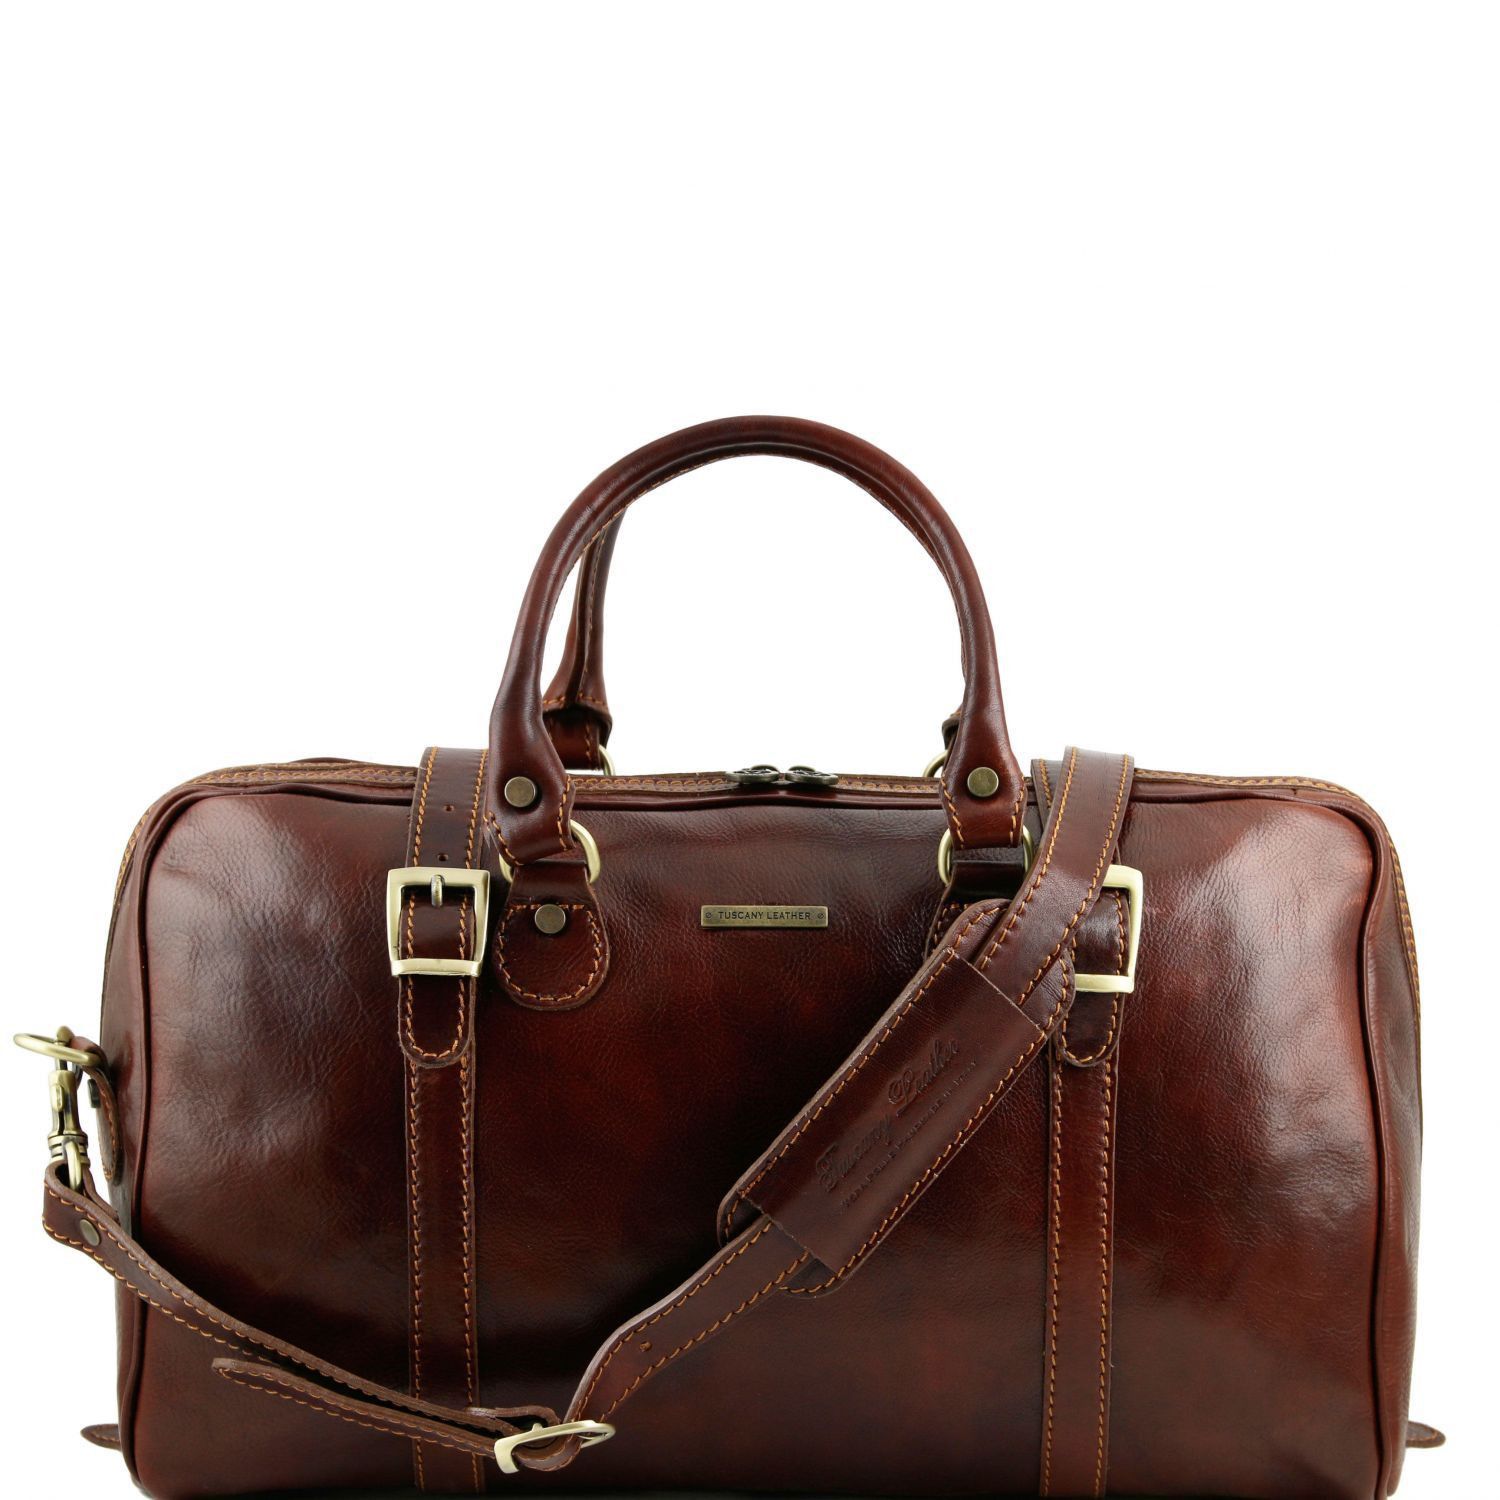 Коричневая сумка большая. Сумка даффл кожаная. Tuscany Leather сумки. Firetrap дорожная сумка коричневая. Мужская сумка Tavecchi Италия.